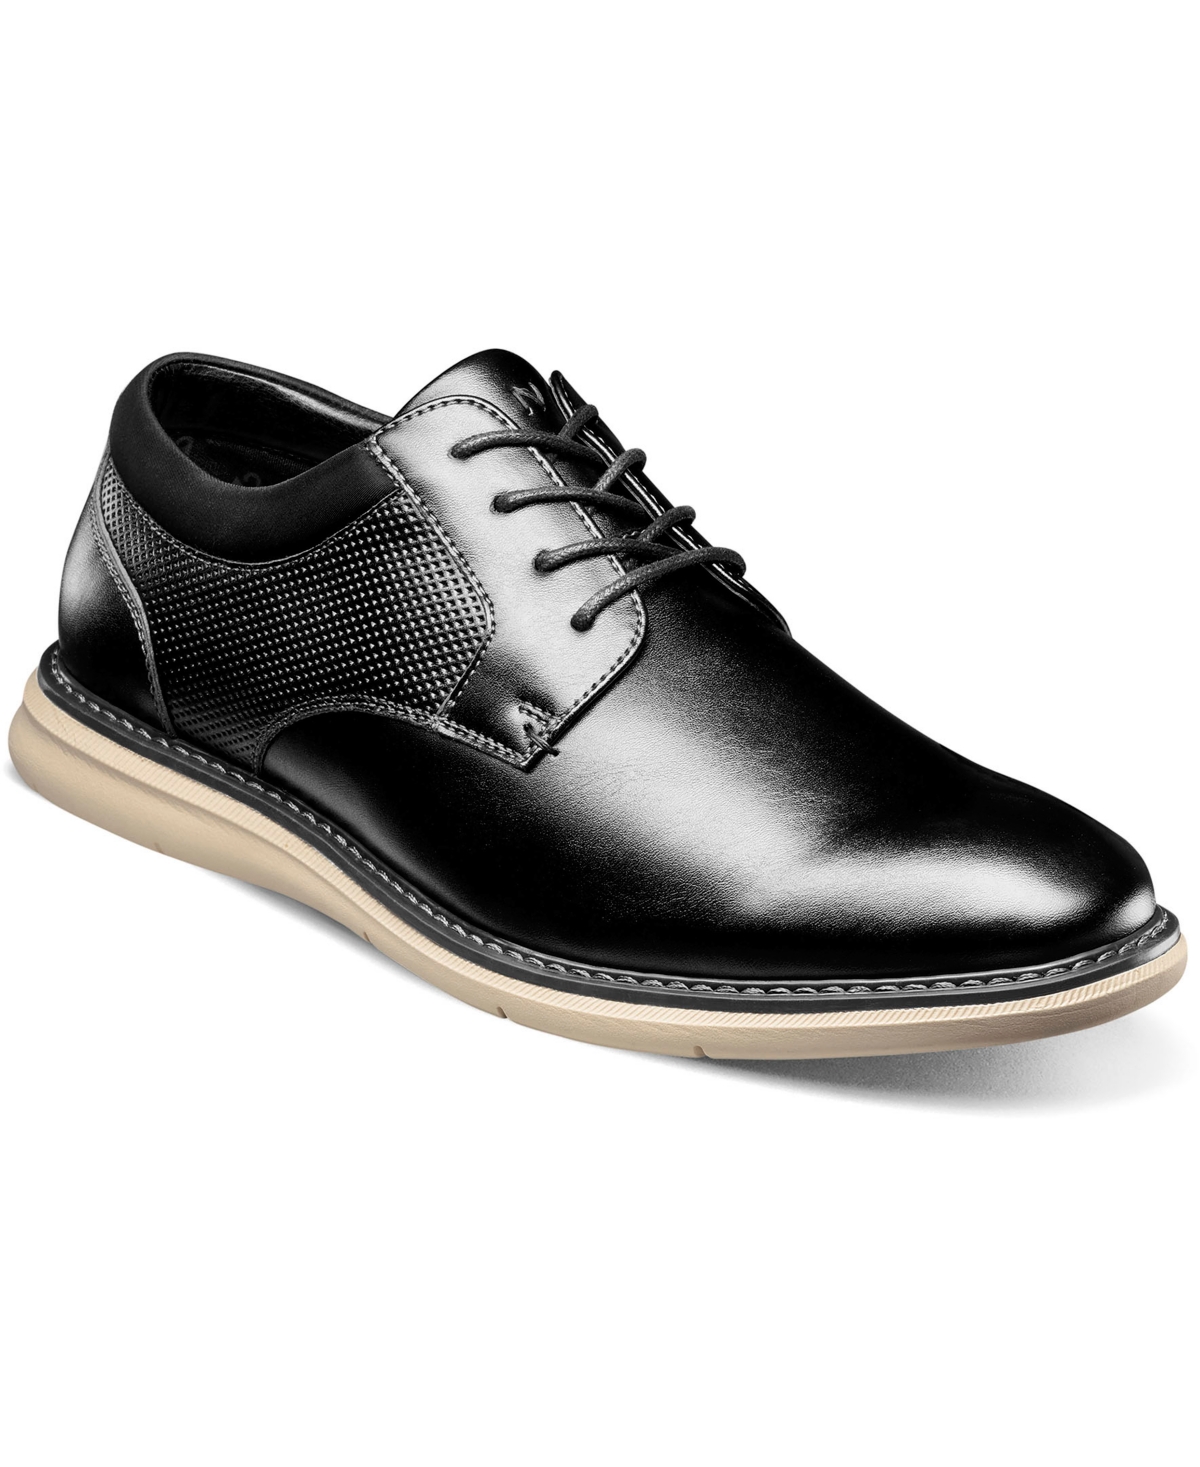 Men's Chase Plain Toe Oxford Shoes - Black Multi